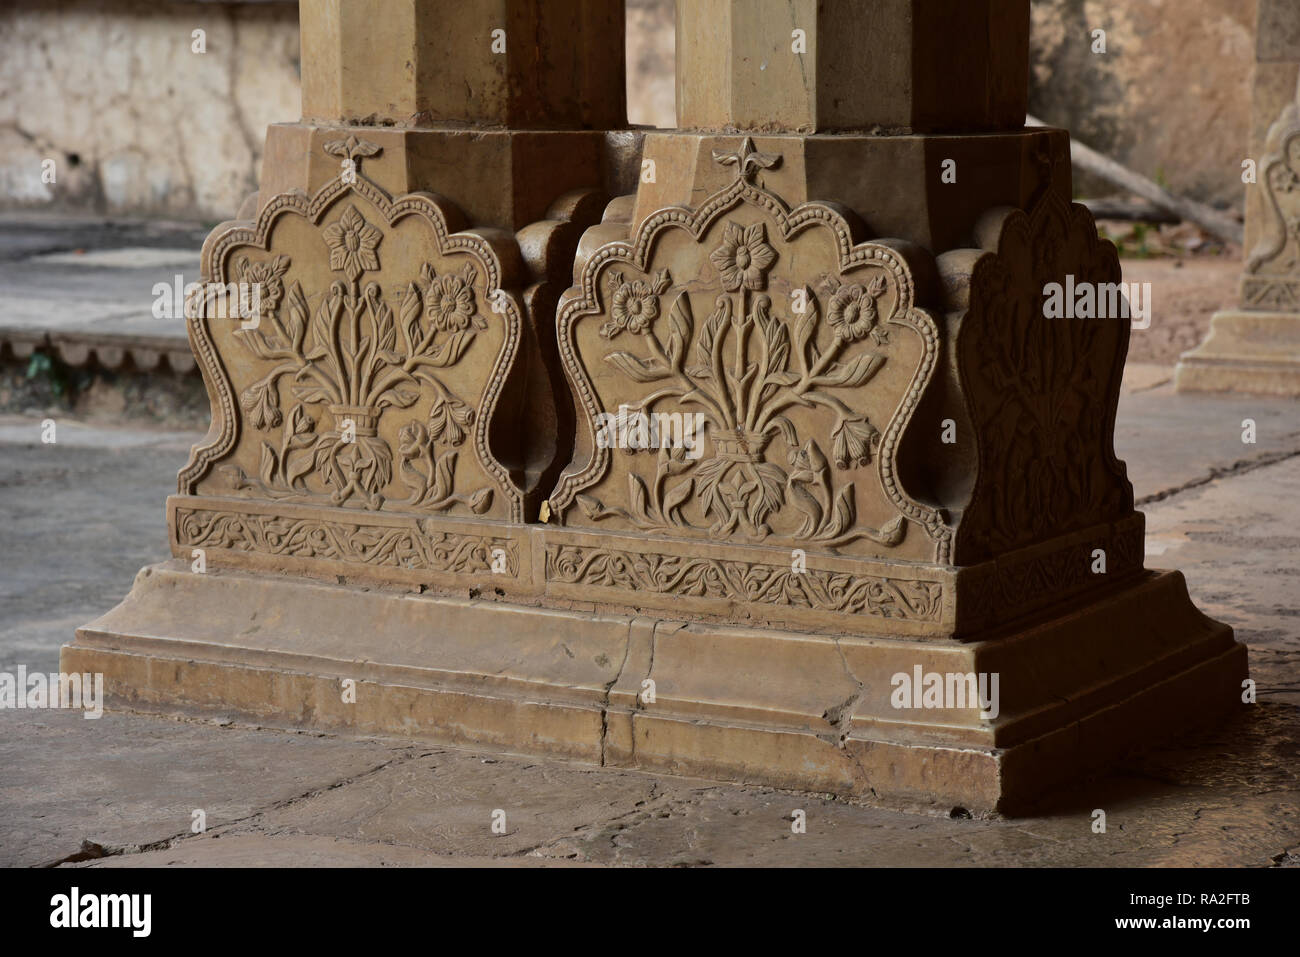 Rajput-Stil geschnitzte florale Grundlagen der steinernen Säulen der gesamten wunderbaren Garh Palast, Bundi, Rajasthan, Indien, Asien gefunden. Stockfoto